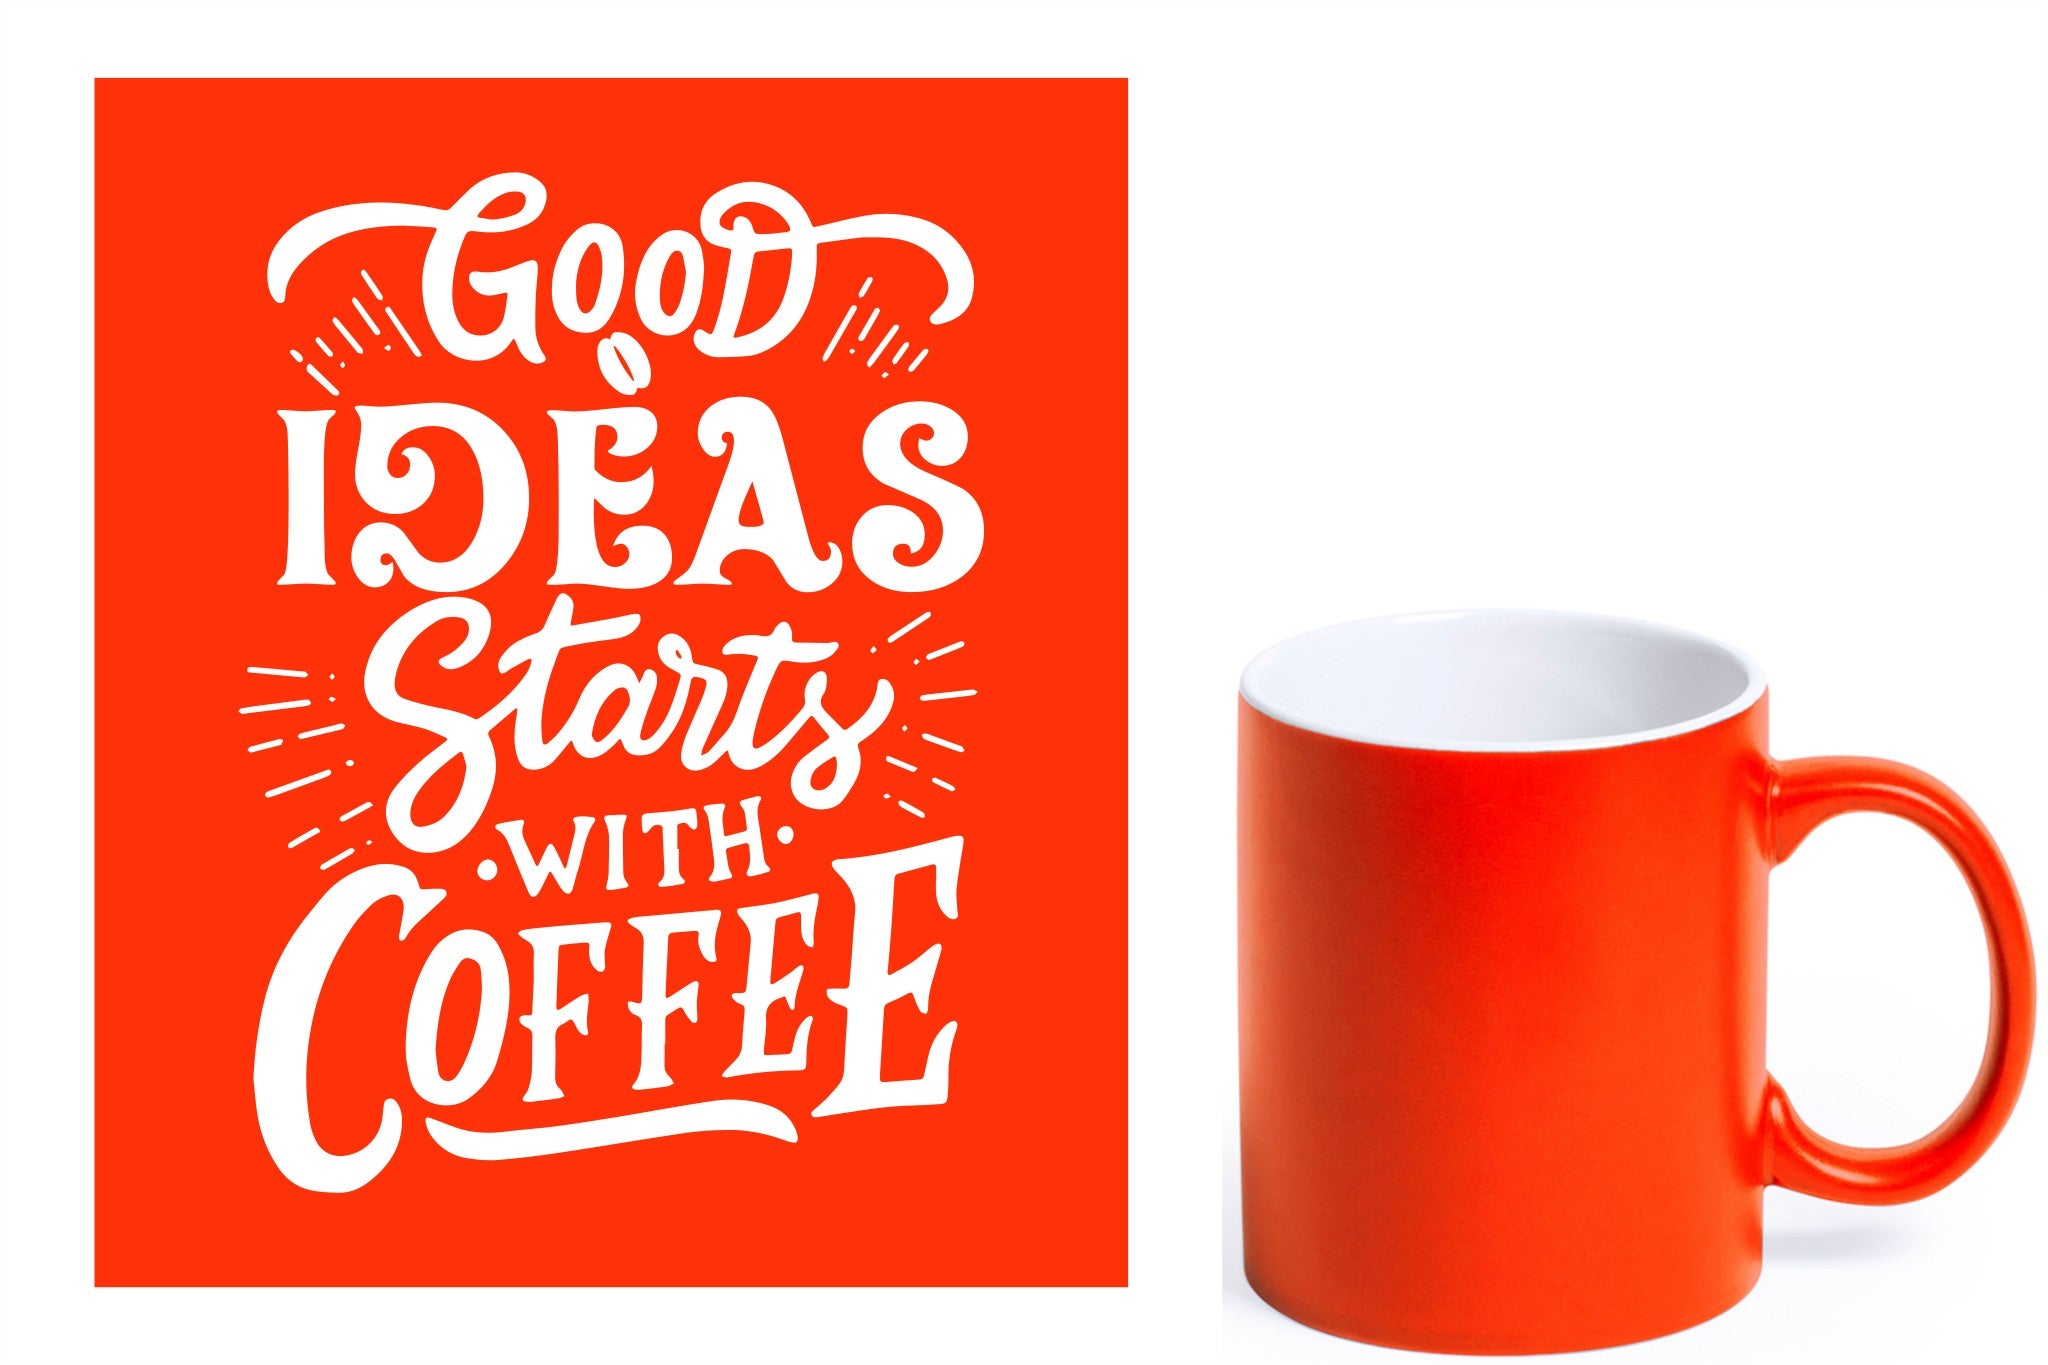 oranje keramische mok met witte gravure  'Good ideas starts with coffee'.